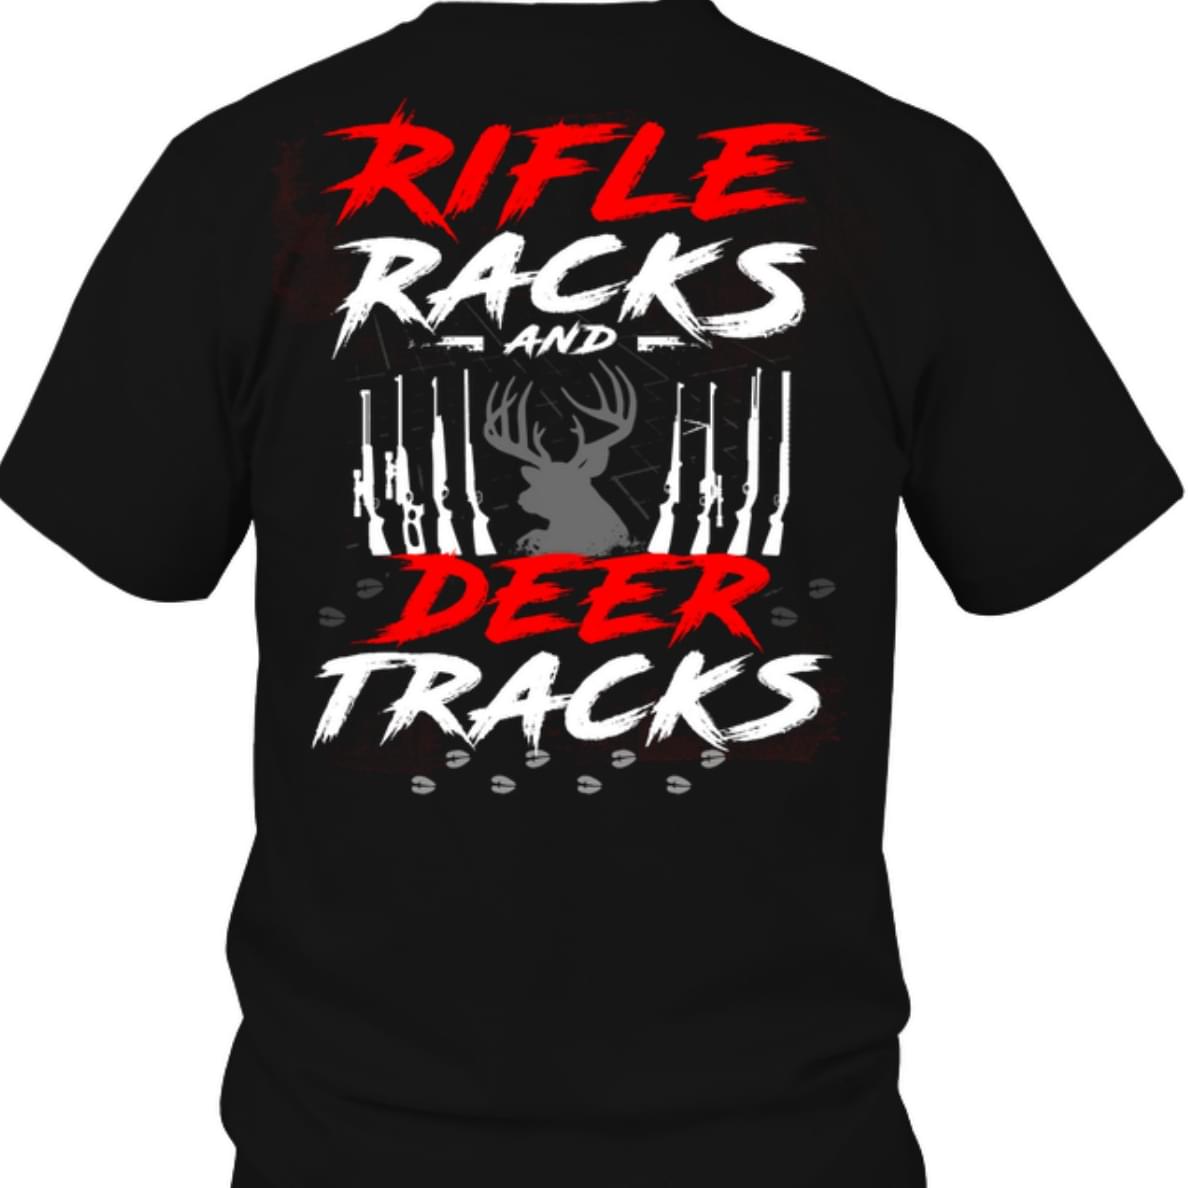 Rifle Racks Deer Tracks